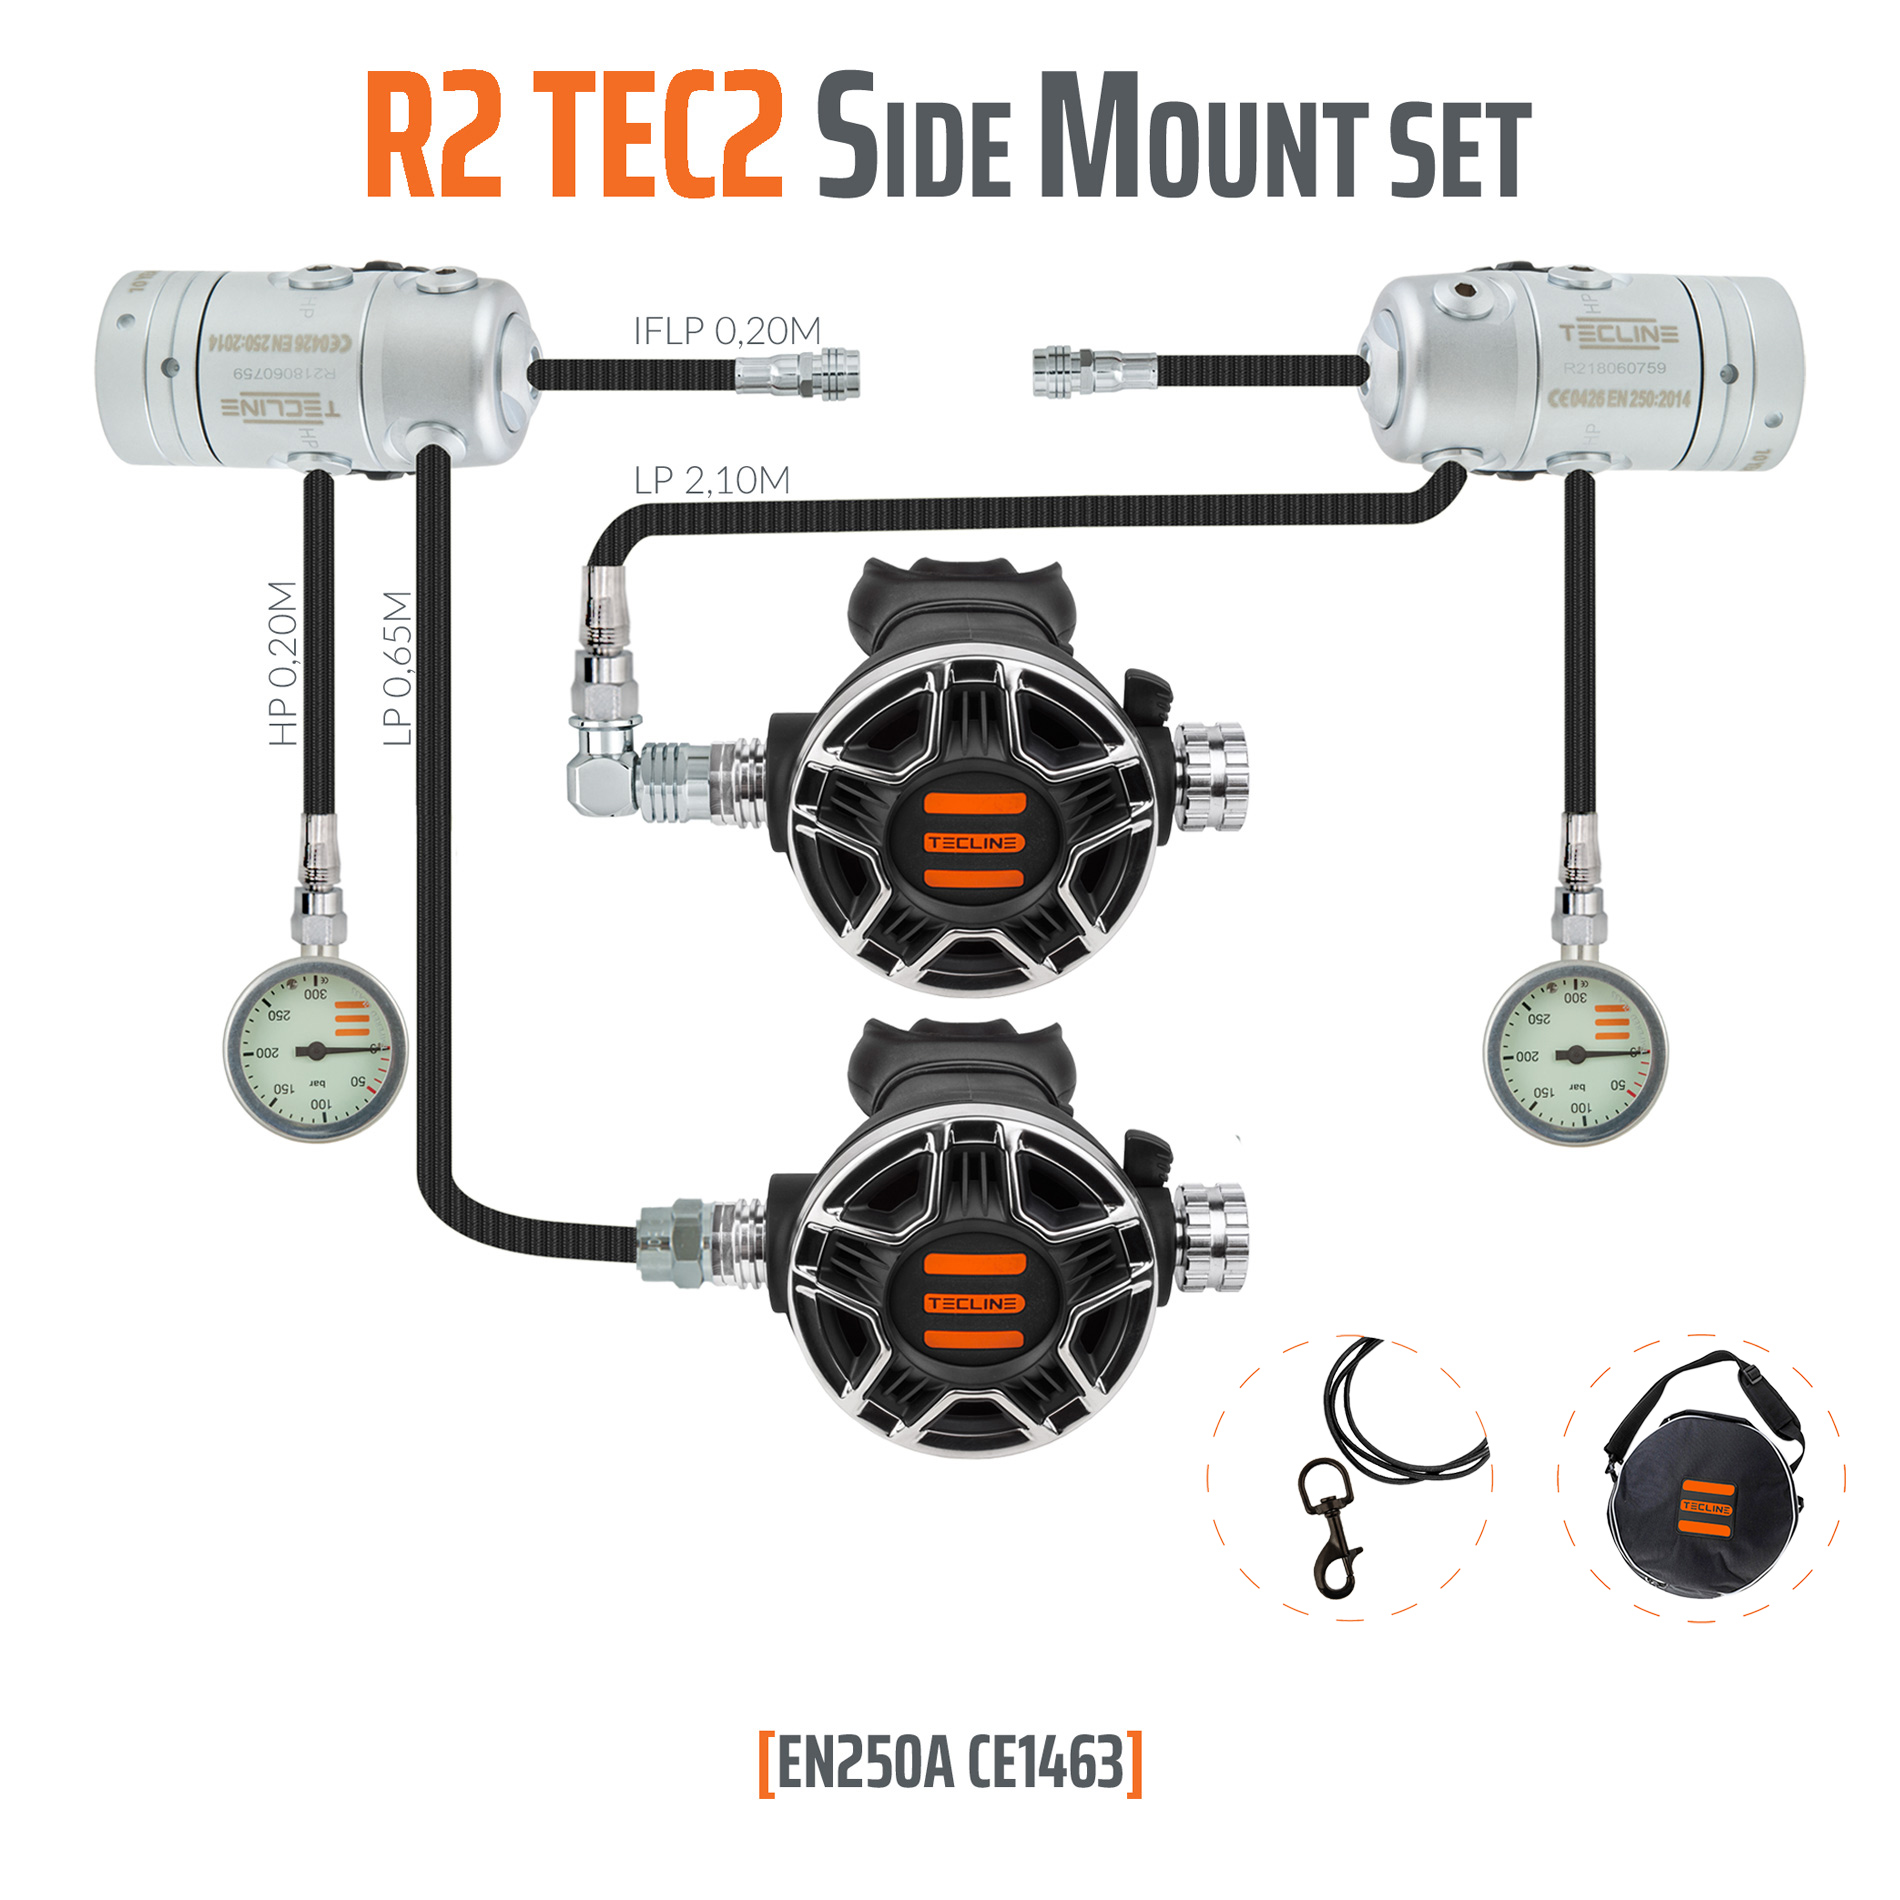 TECLINE REGULATOR R2 TEC2 SIDE MOUNT SET - EN250A